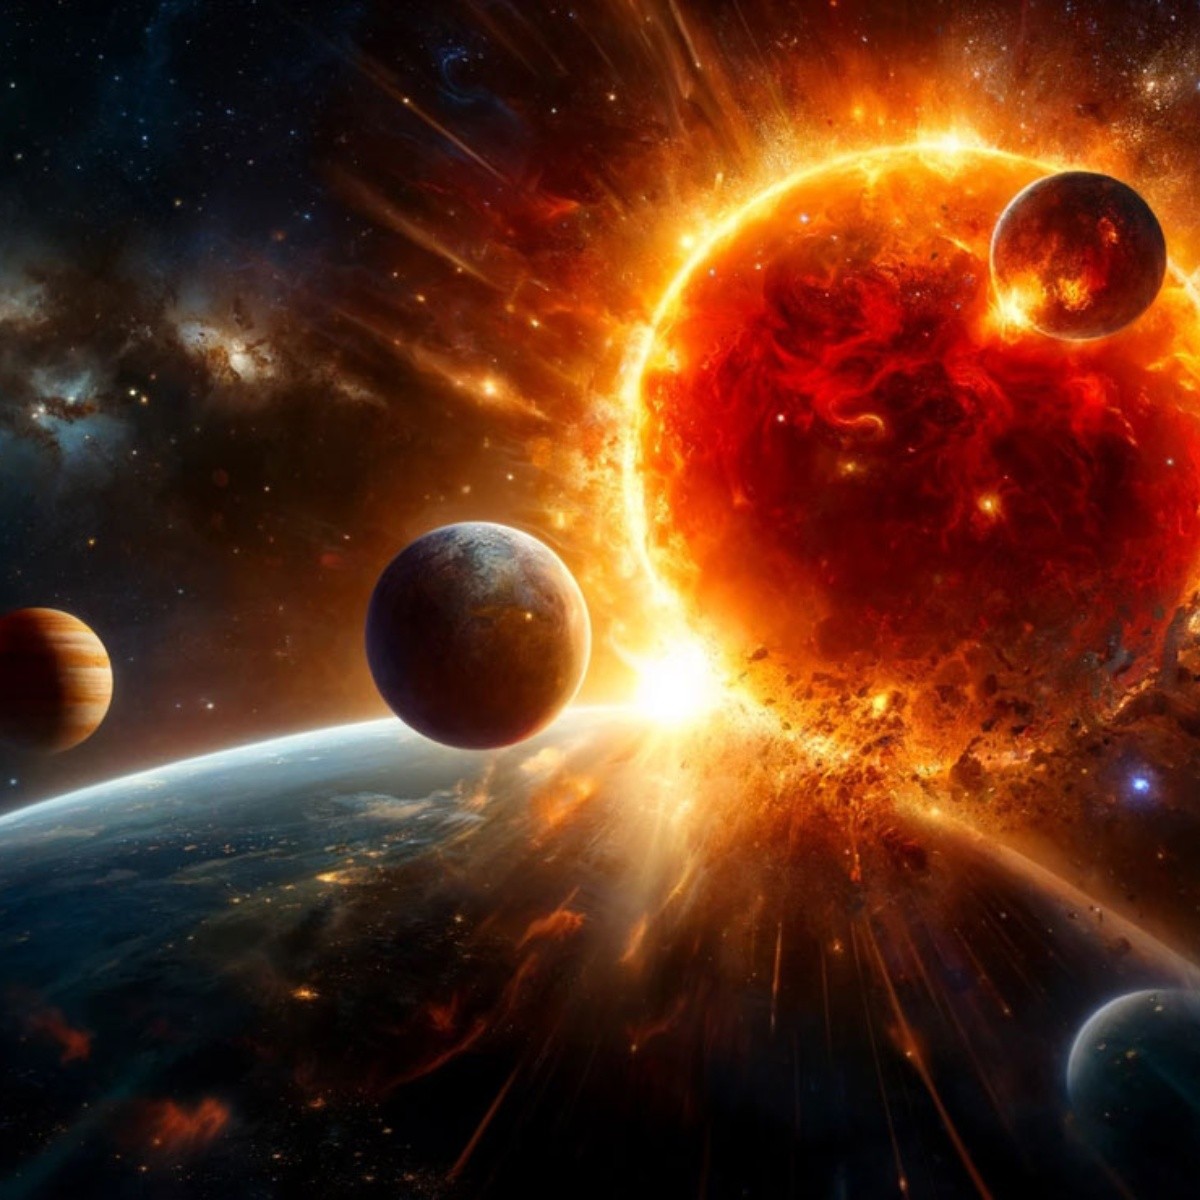 mercurio, venus y la tierra podrían ser devorados por el sol, según un estudio